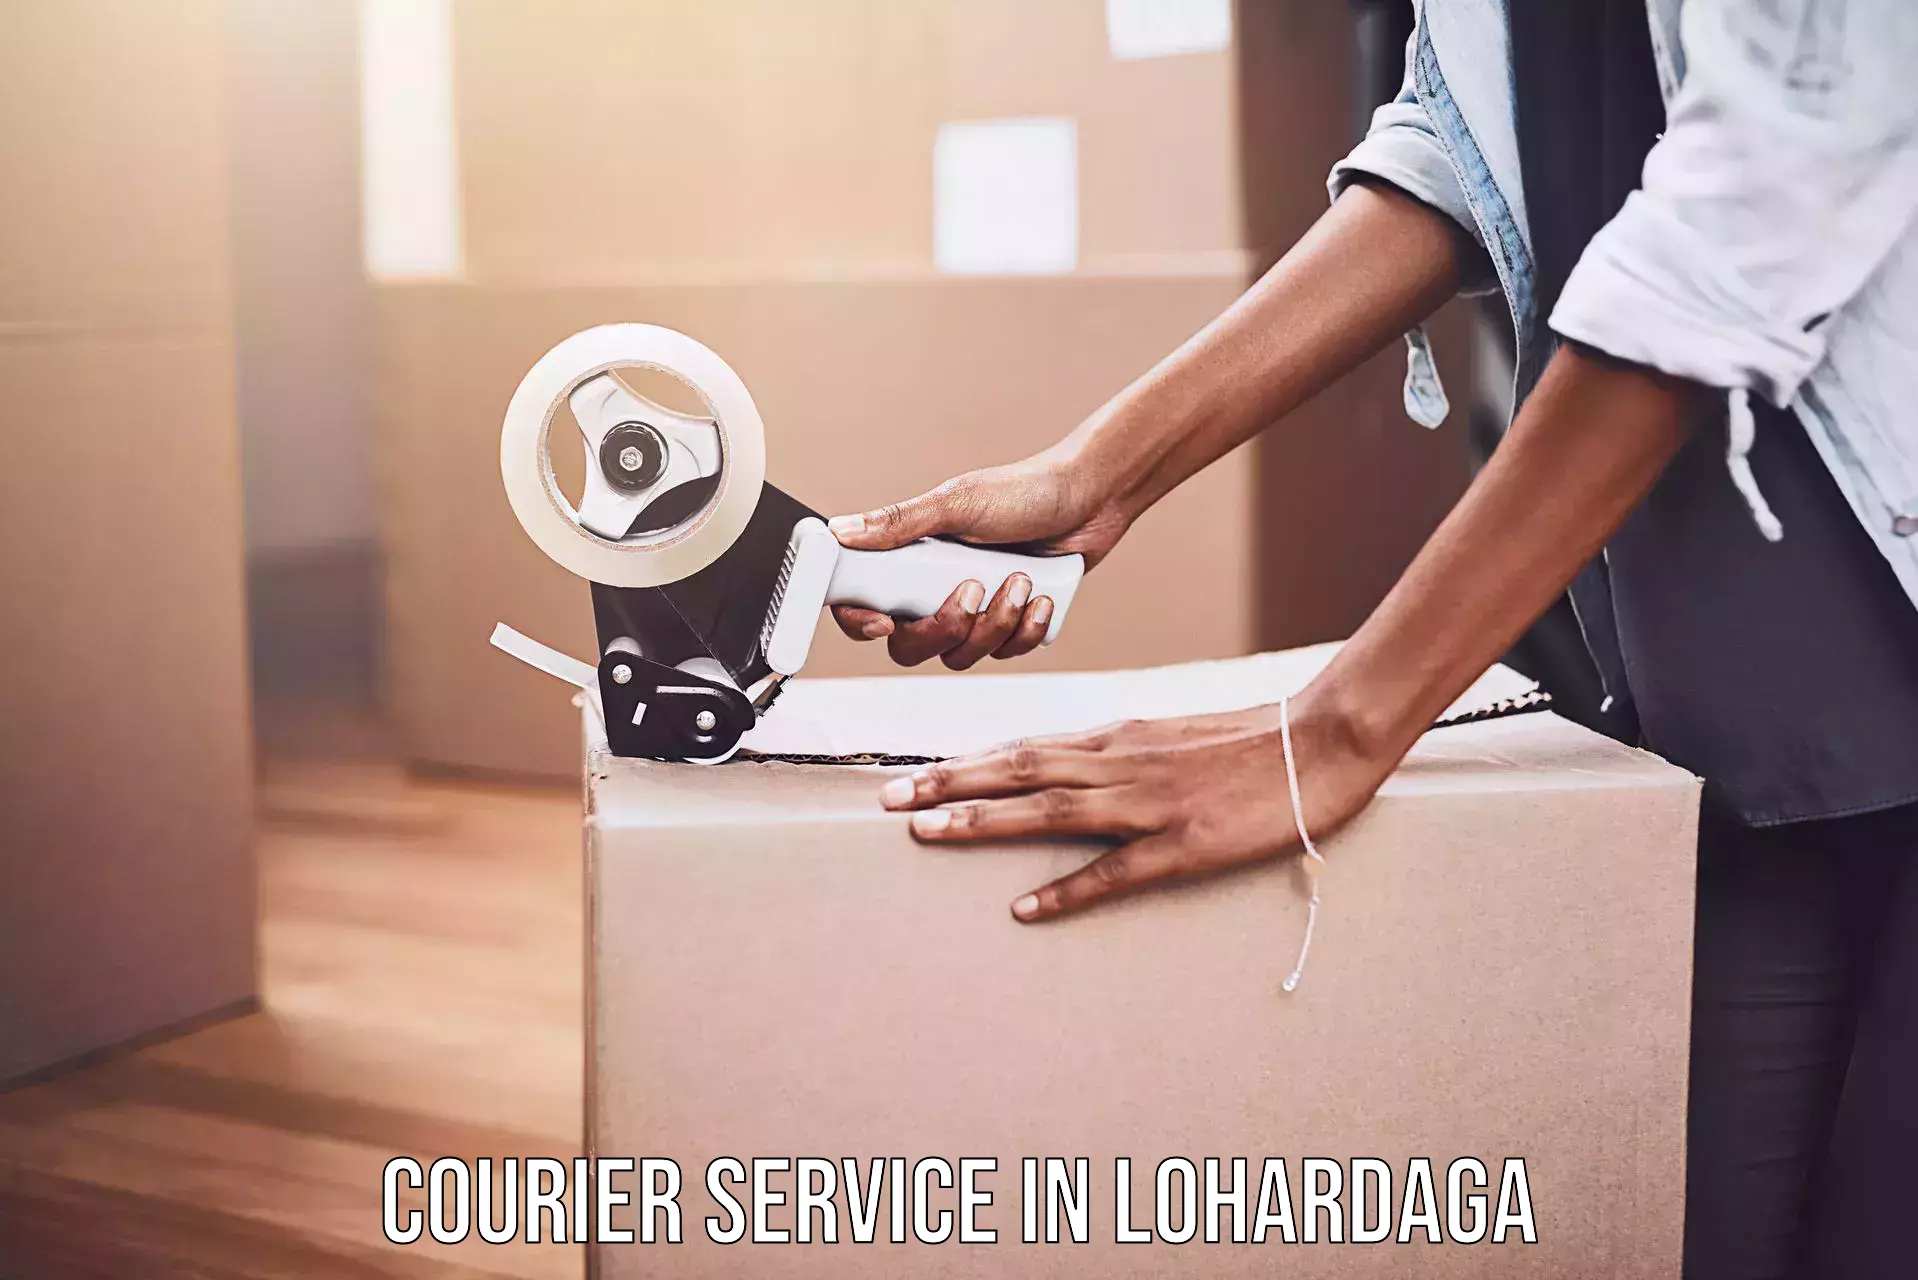 Modern delivery methods in Lohardaga